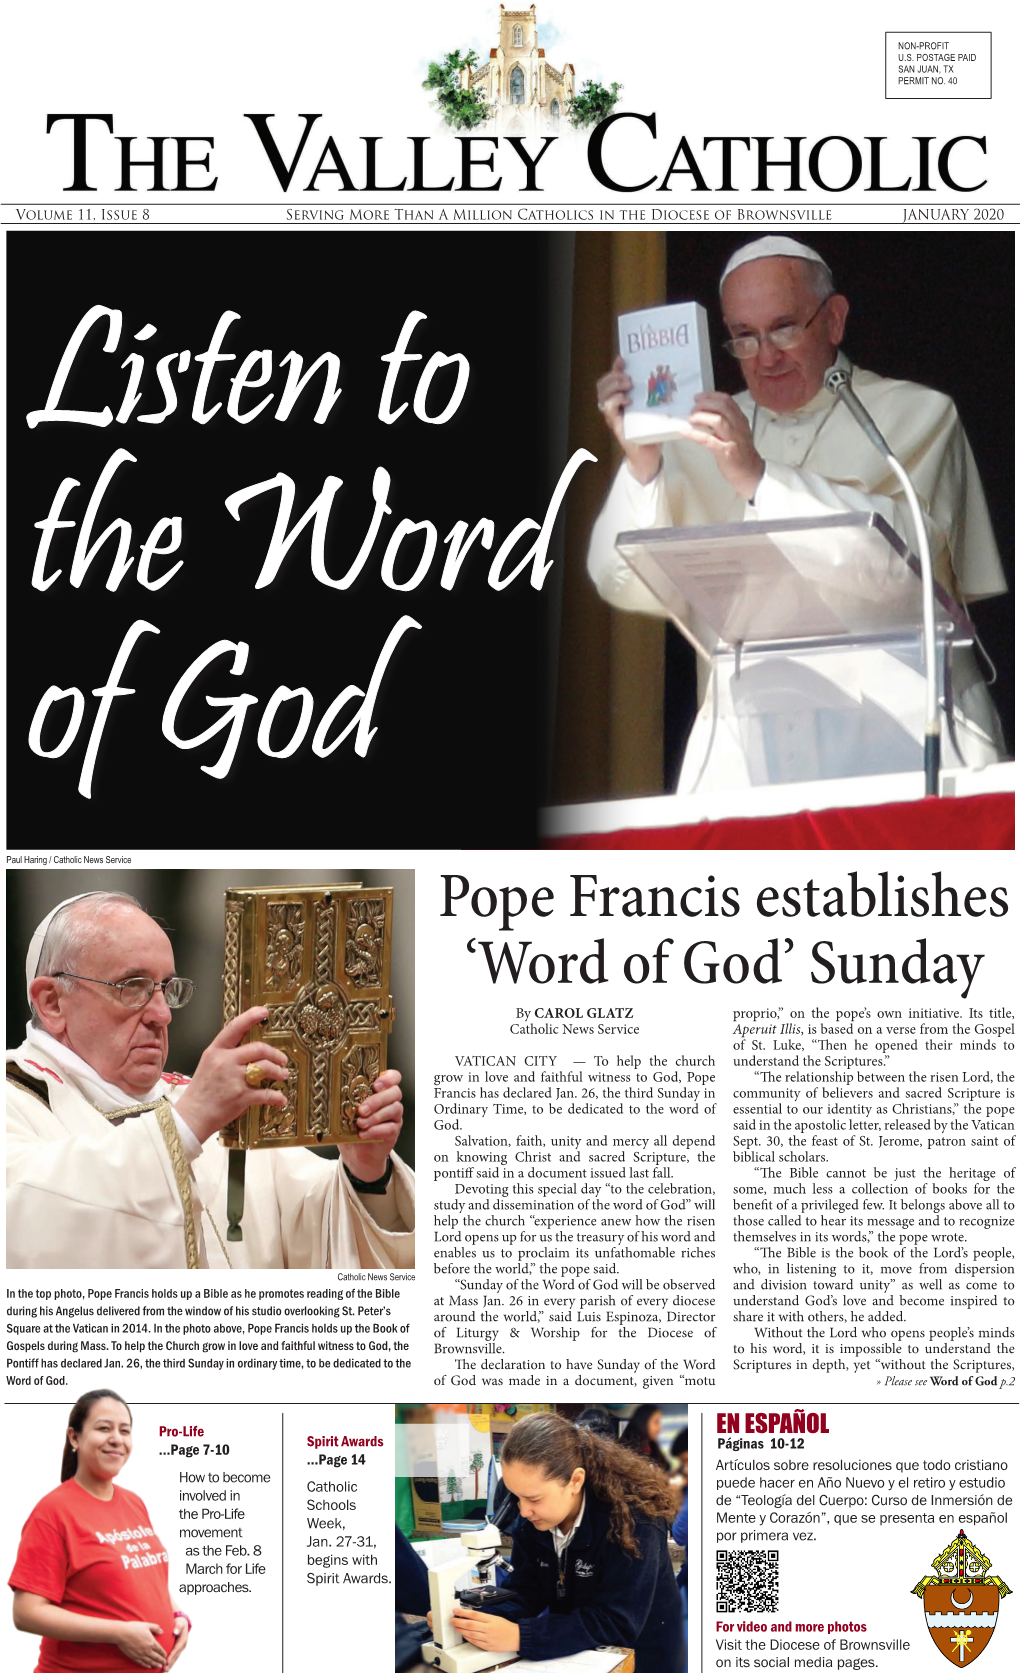 Pope Francis Establishes 'Word of God' Sunday